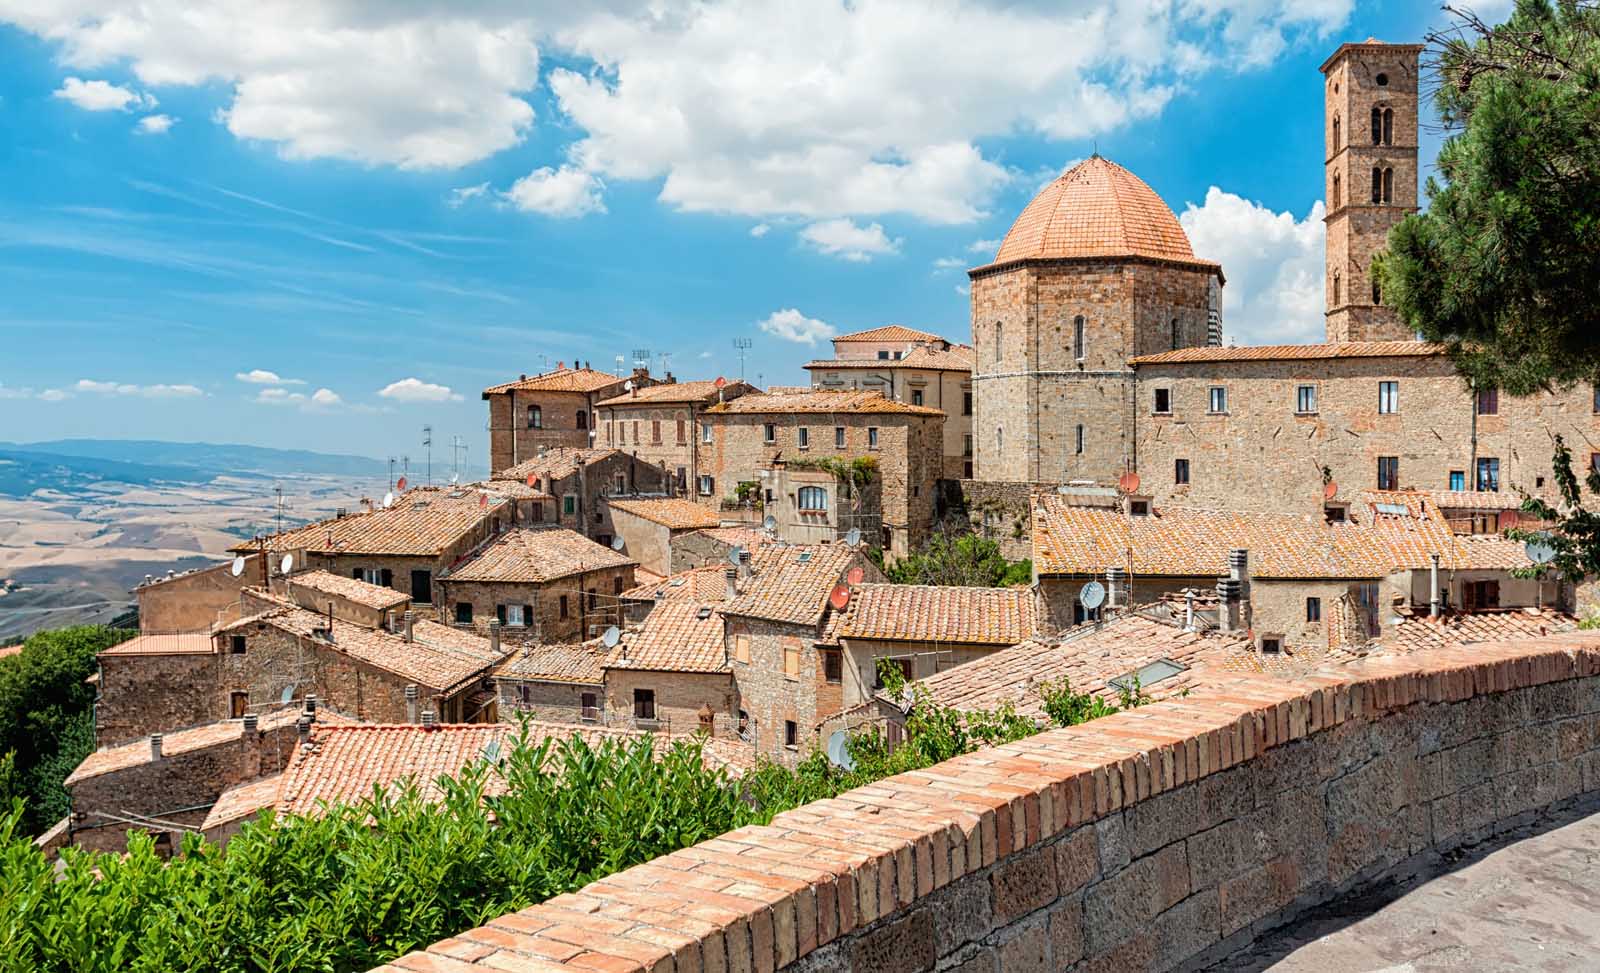 wonderful medieval village of volterra